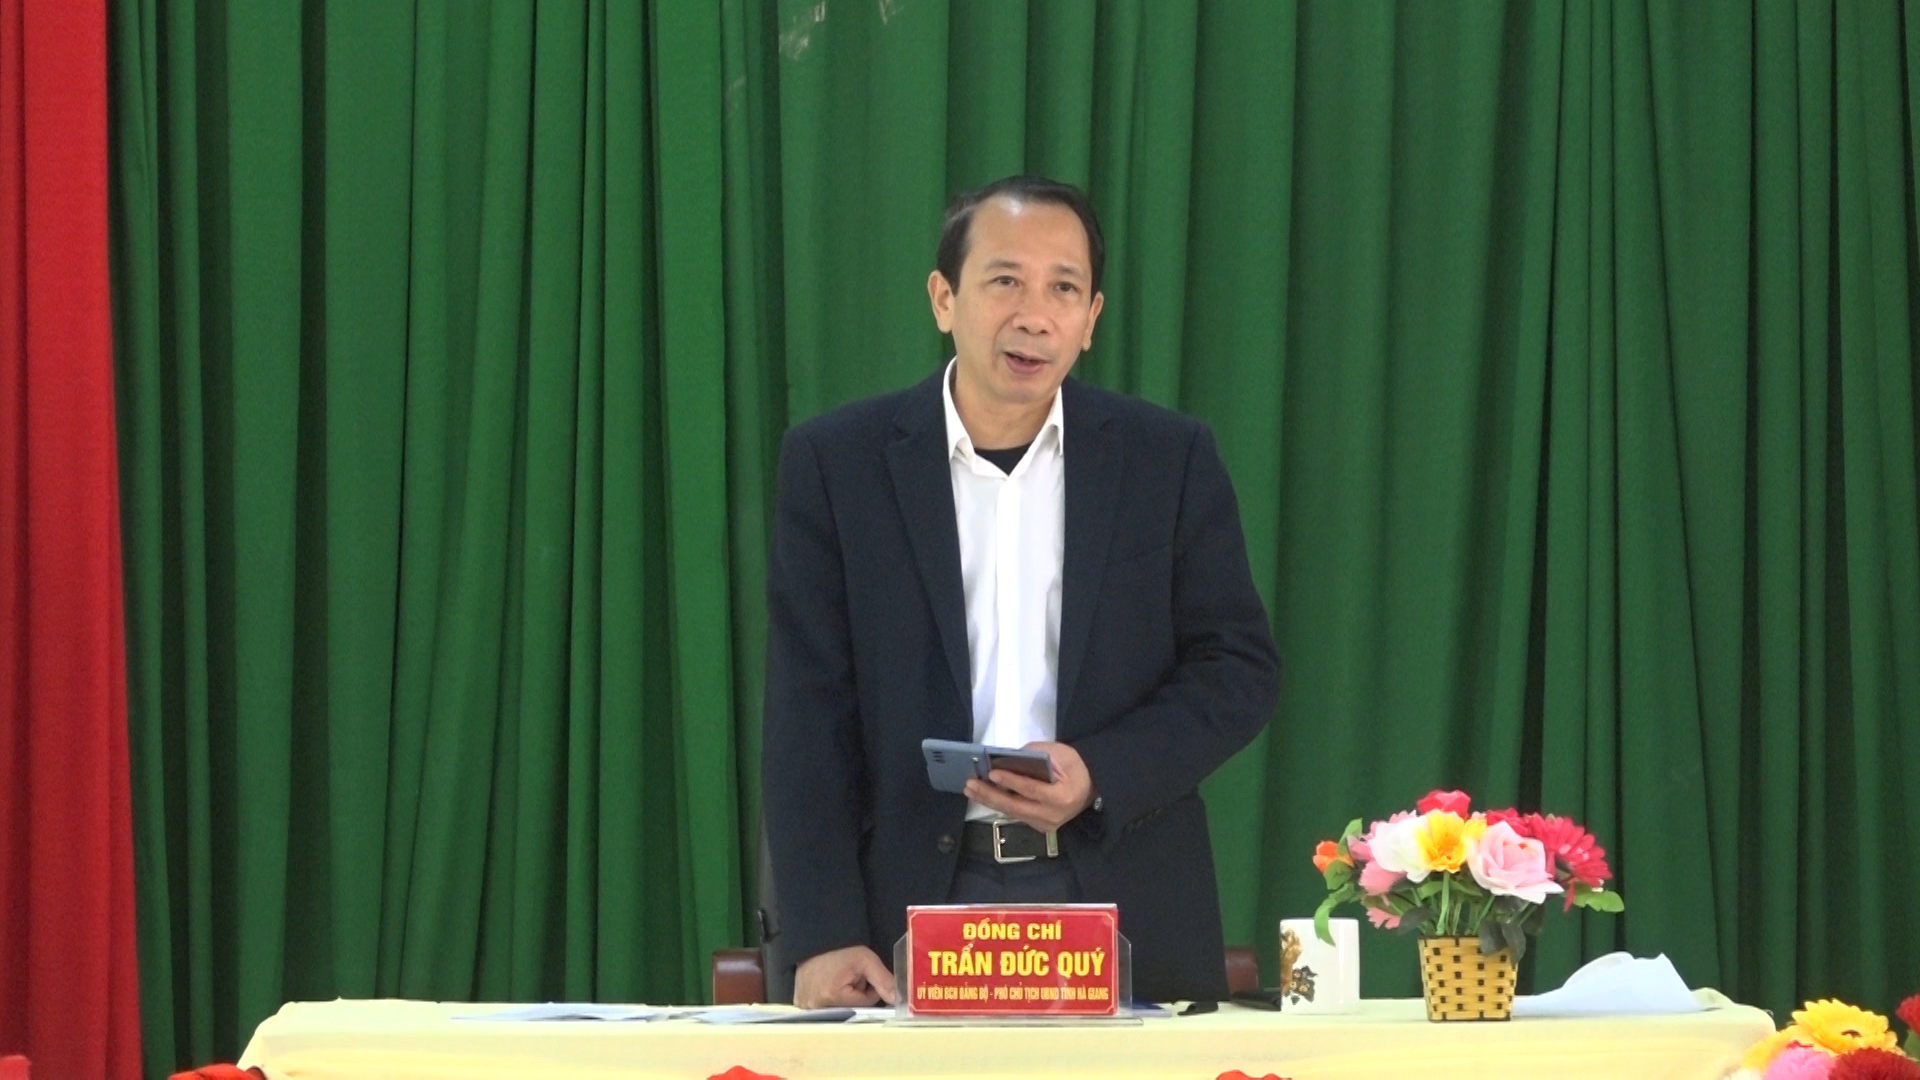 Đồng chí Trần Đức Quý kiểm tra thực hiện quy chế dân chủ tại huyện Đồng Văn